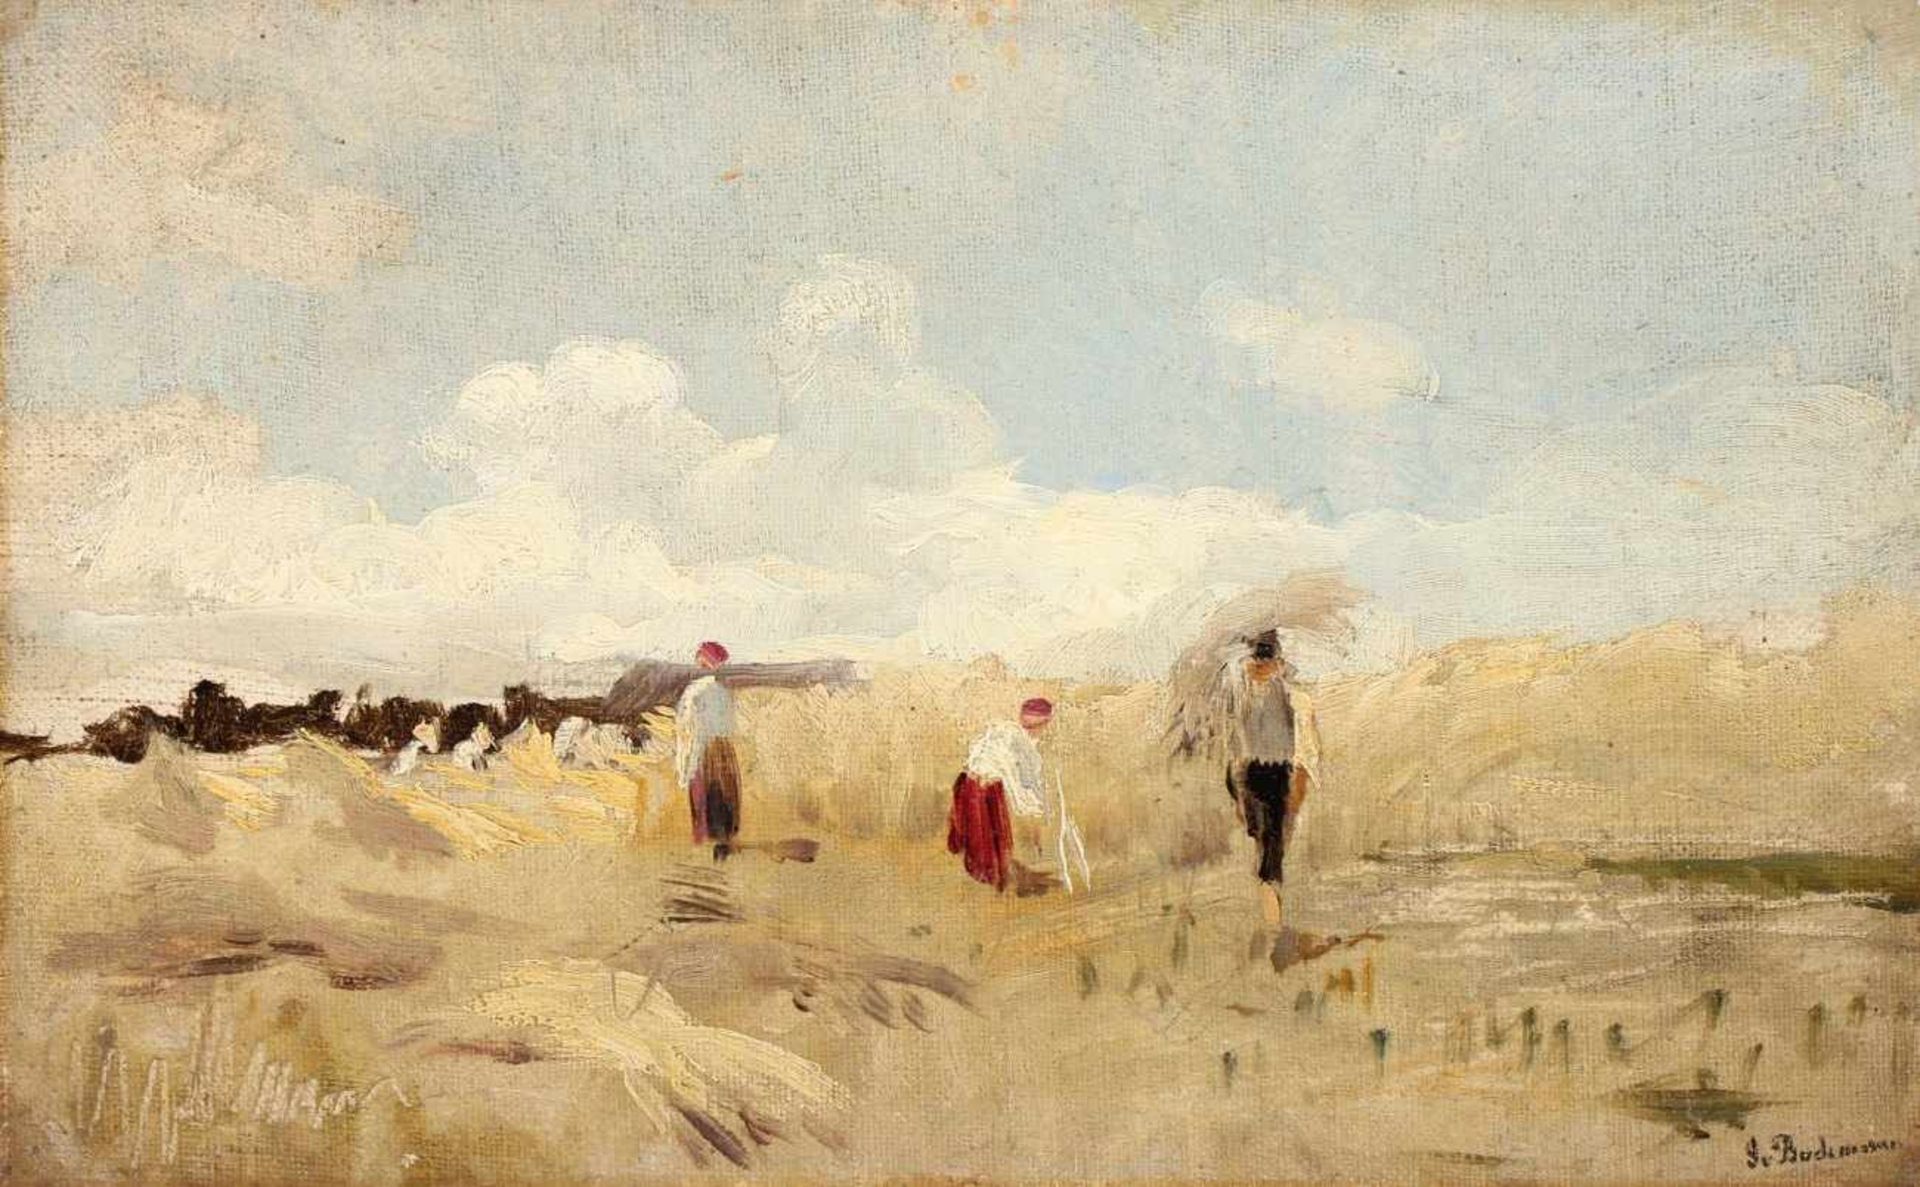 BOCHMANN, Gregor von (1850-1930), "Estnische Bauern bei der Heuernte", Studie, Öl/Lwd., 17 x 26,5,